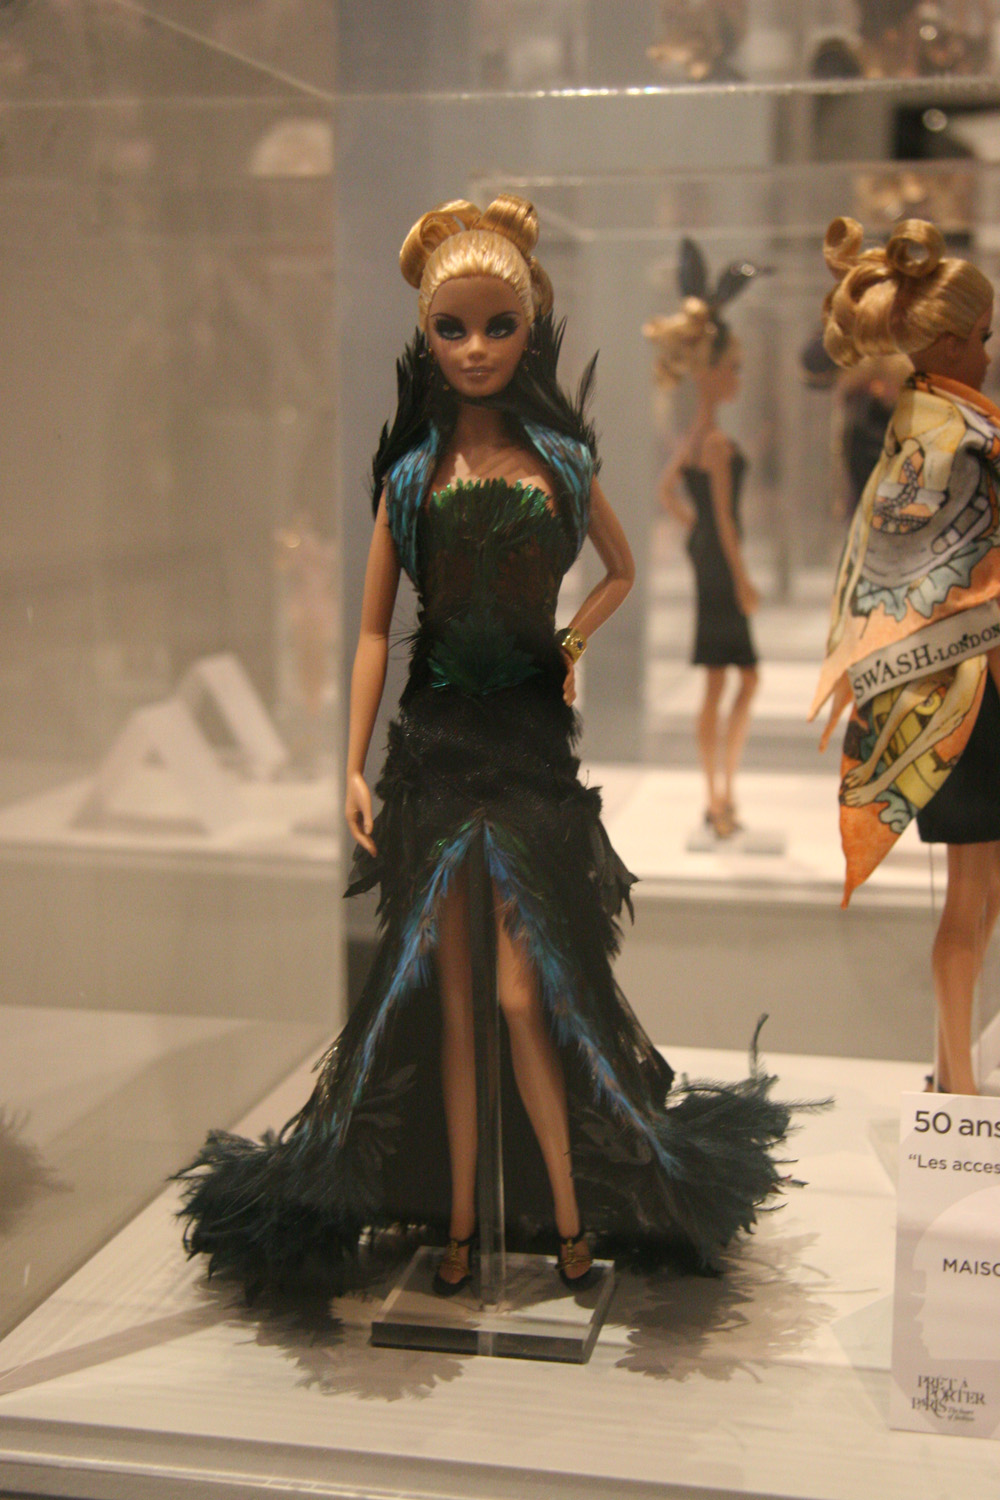 Barbie Celebrates 50th Anniversary in Paris